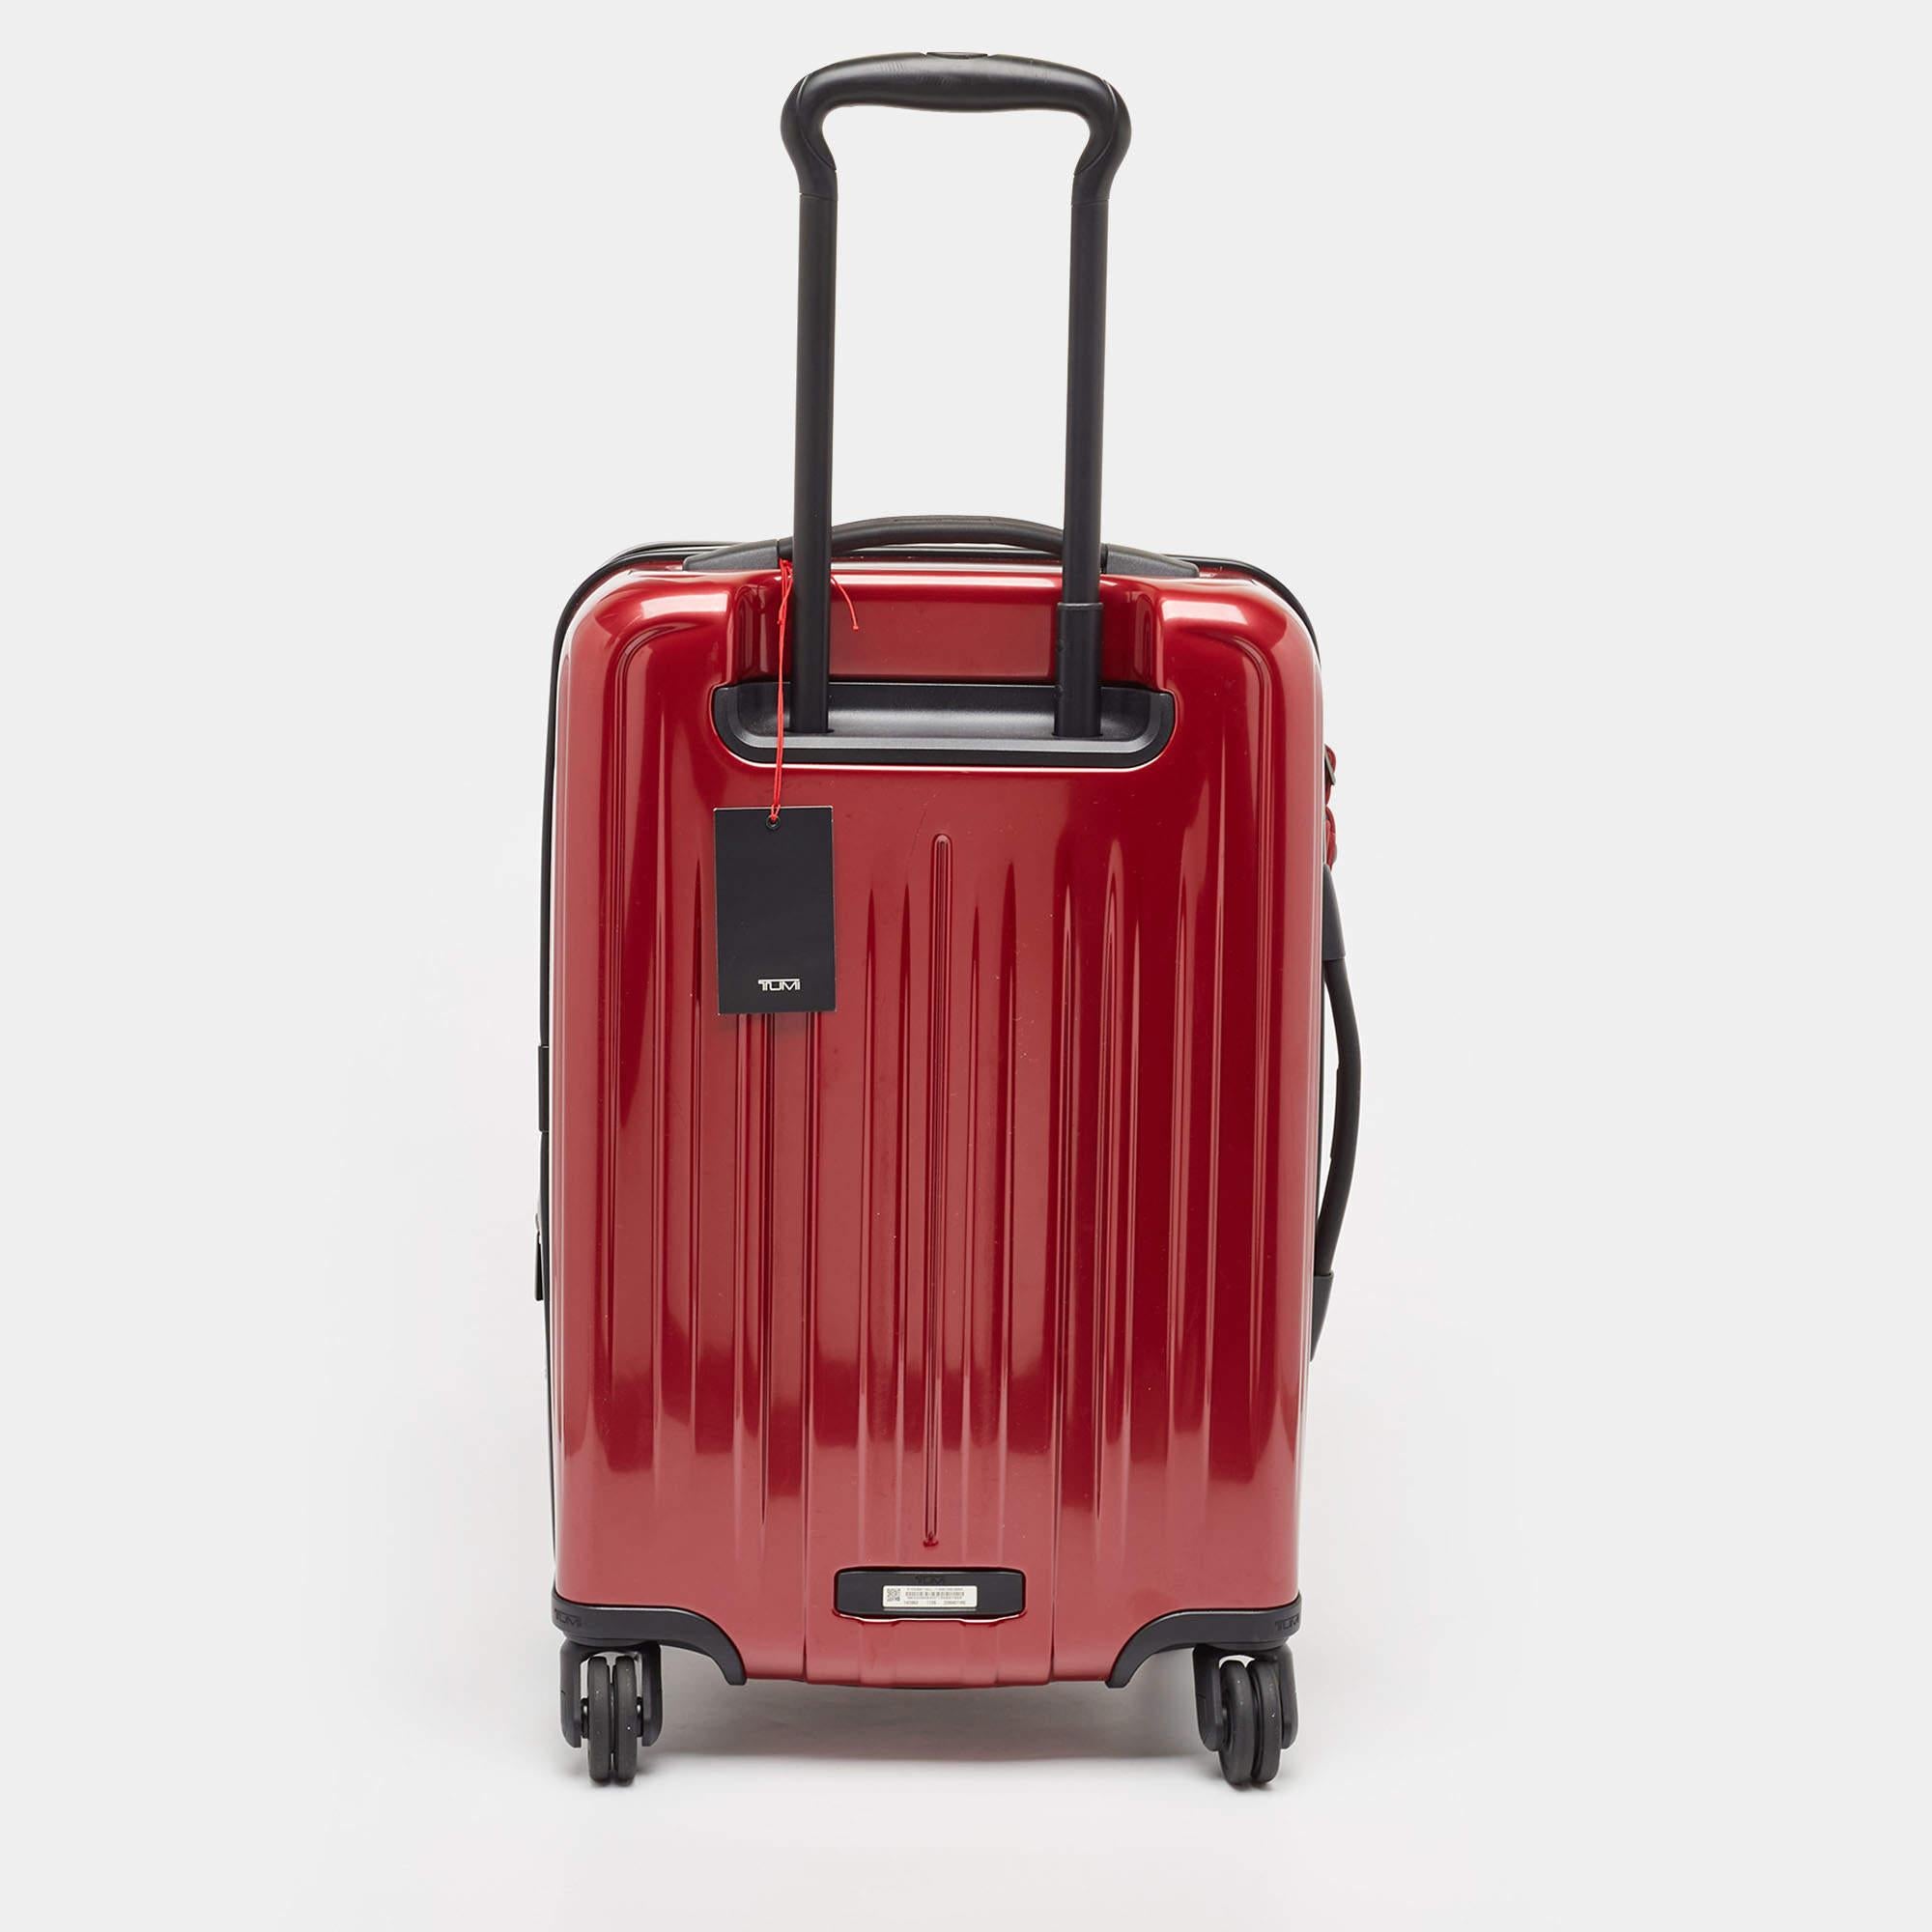 Cette valise de la maison TUMI est un accessoire vers lequel vous vous tournerez lorsque vous aurez des projets de voyage. Il a été fabriqué en utilisant les meilleurs matériaux pour être attrayant et durable. C'est un investissement qui en vaut la